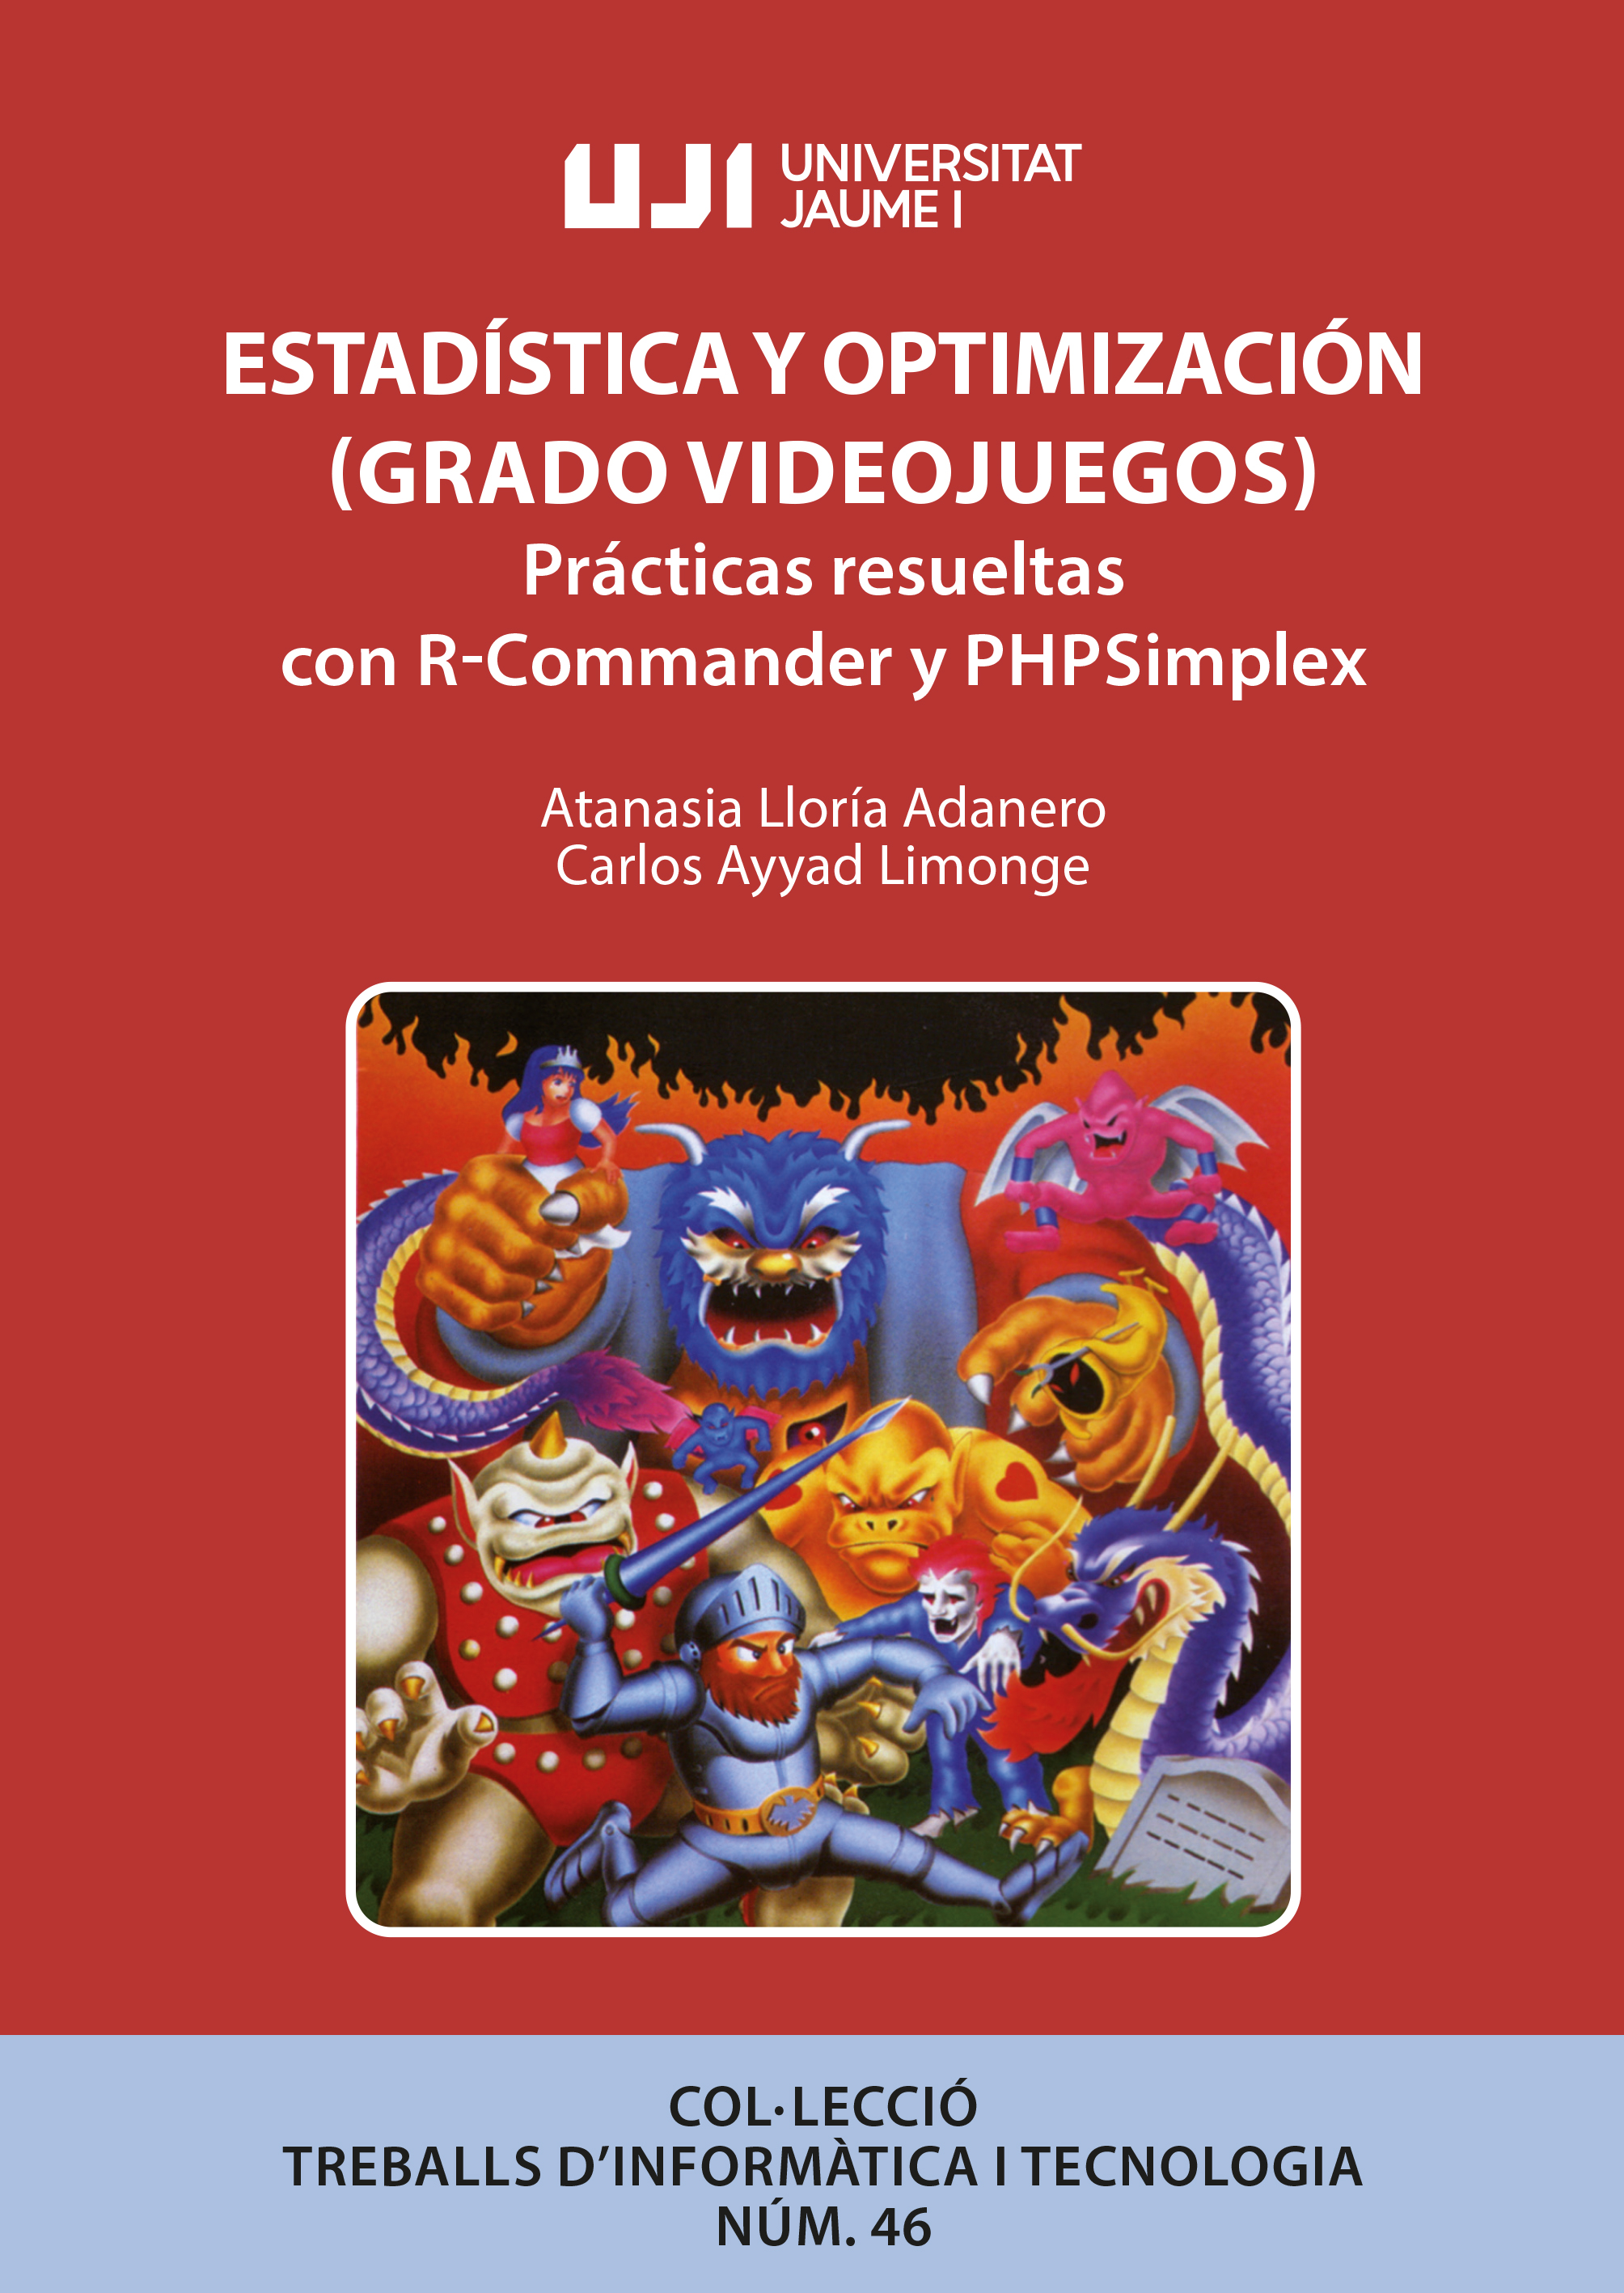 EstadÃ­stica y OptimizaciÃ³n (Grado Videojuegos): PrÃ¡cticas resueltas con R-Commander y PHPSimplex.